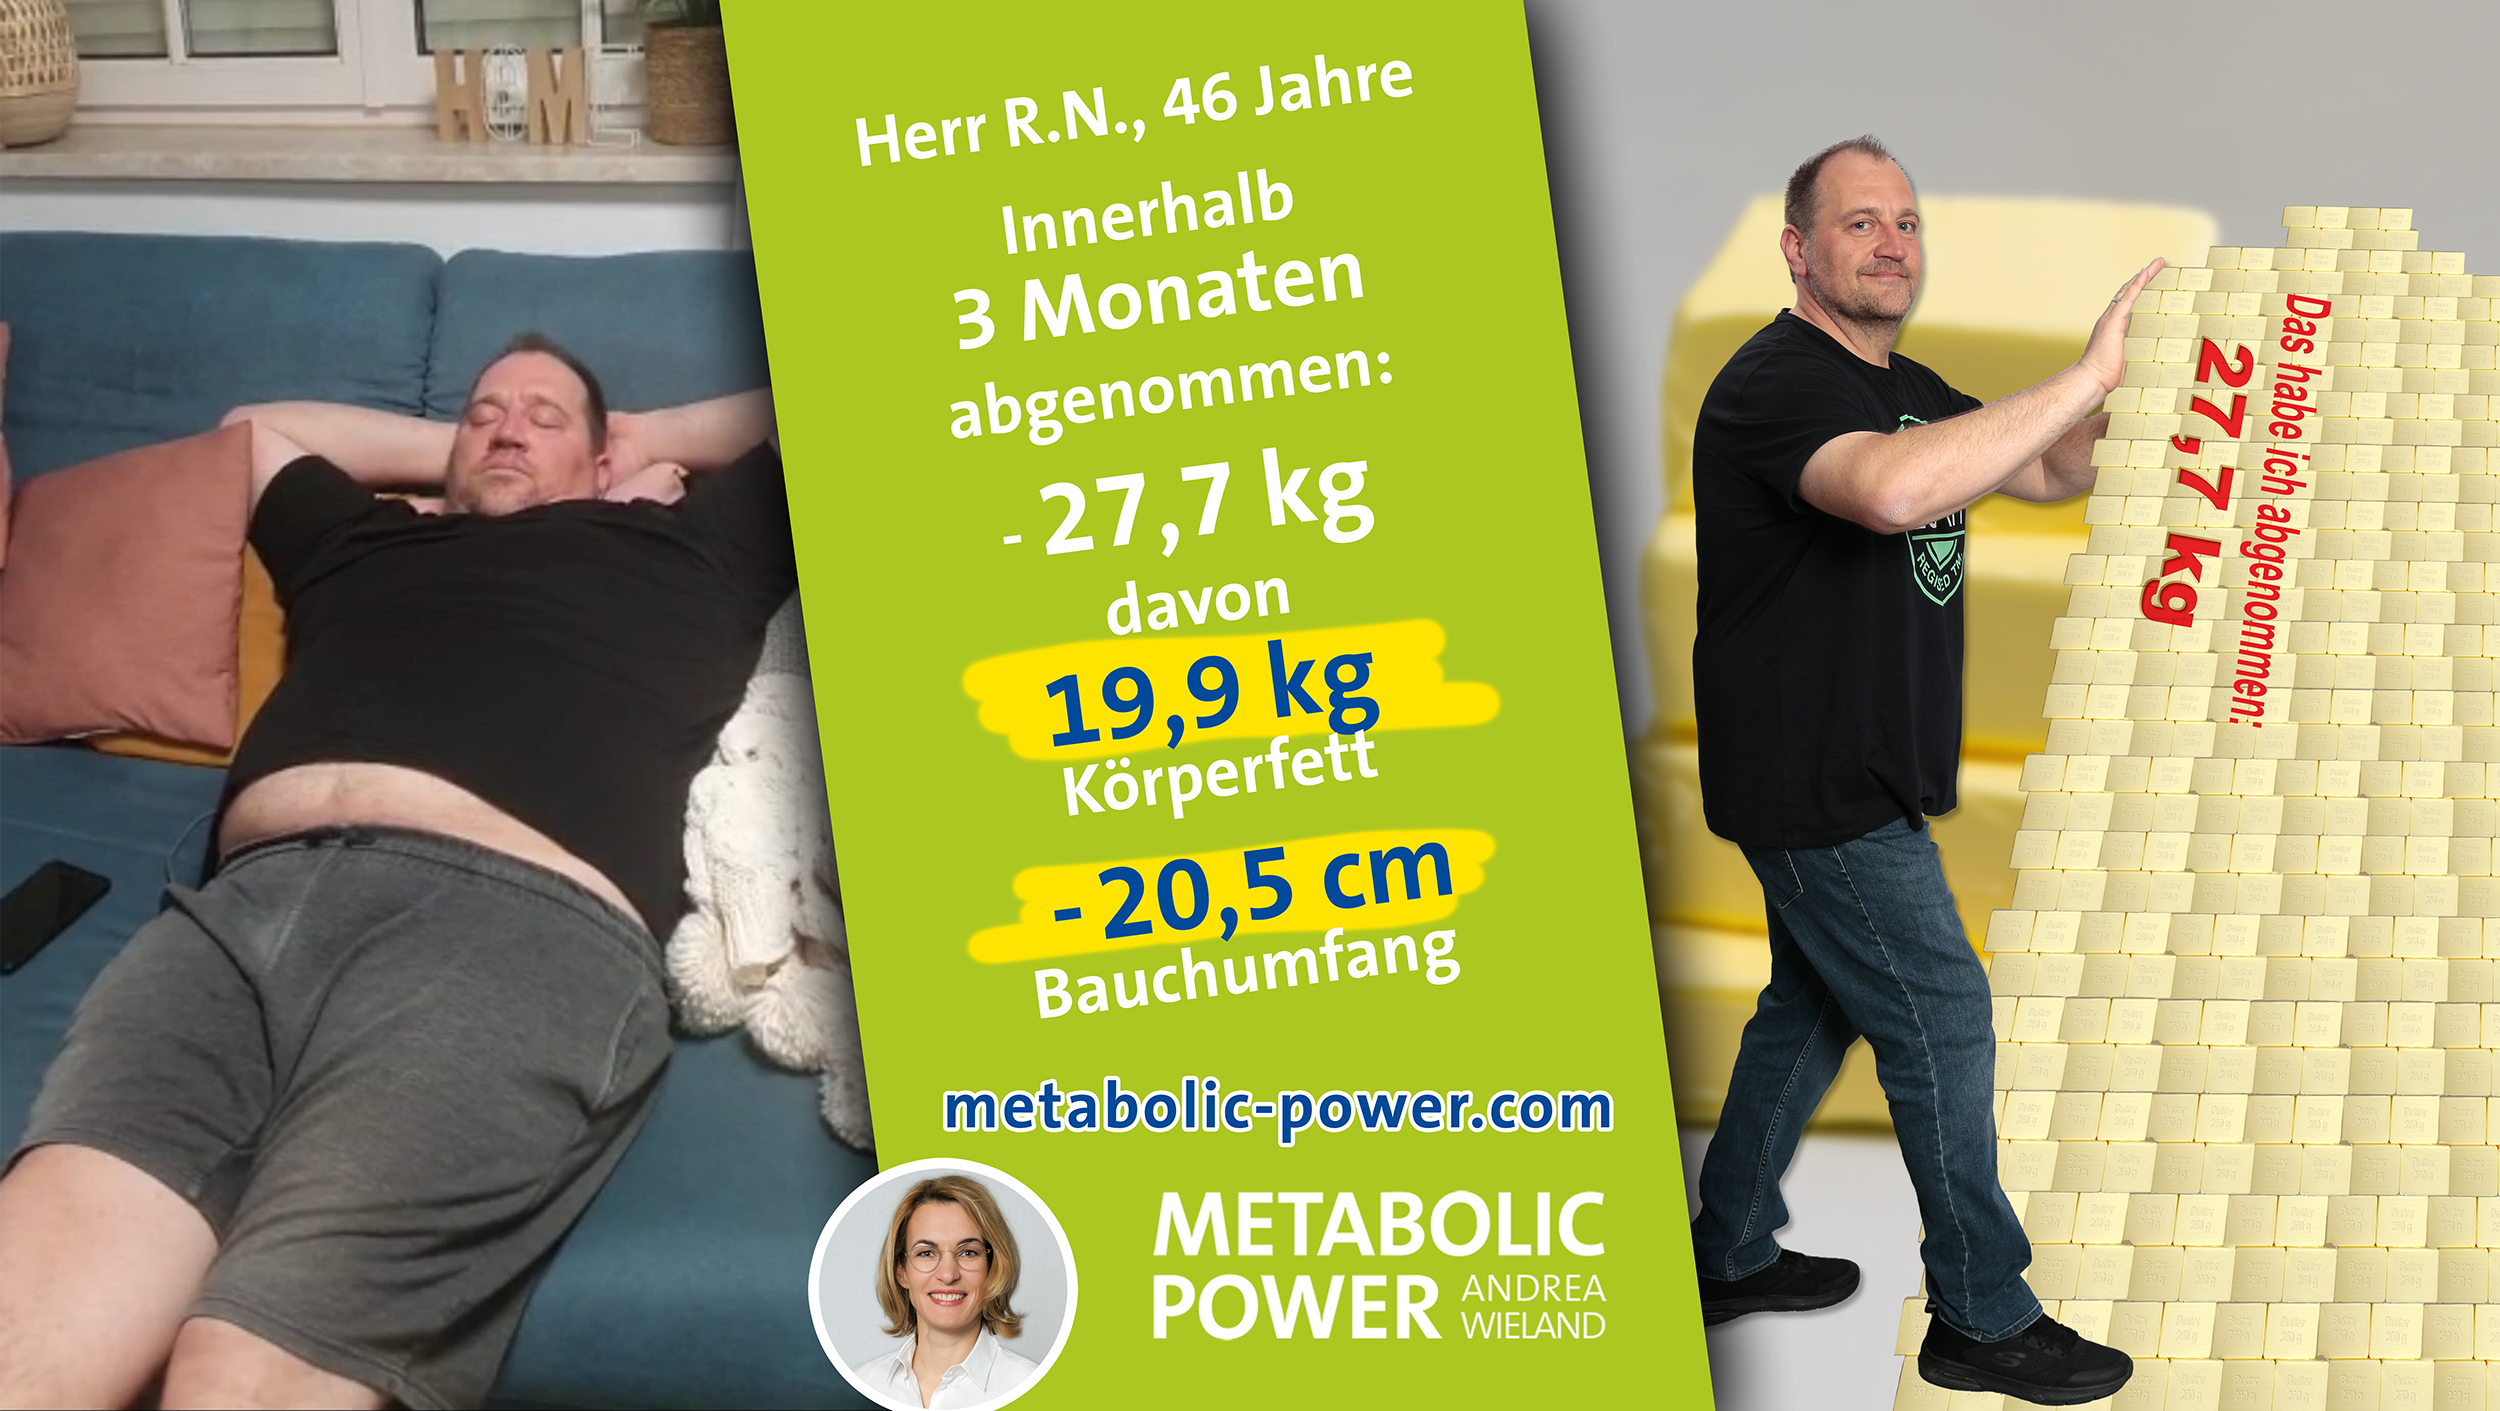 Herr R.N., 46 Jahre in 3 Monaten: - 27,7 kg, davon 19,7 kg Körperfett -20,5 Bauchumfang